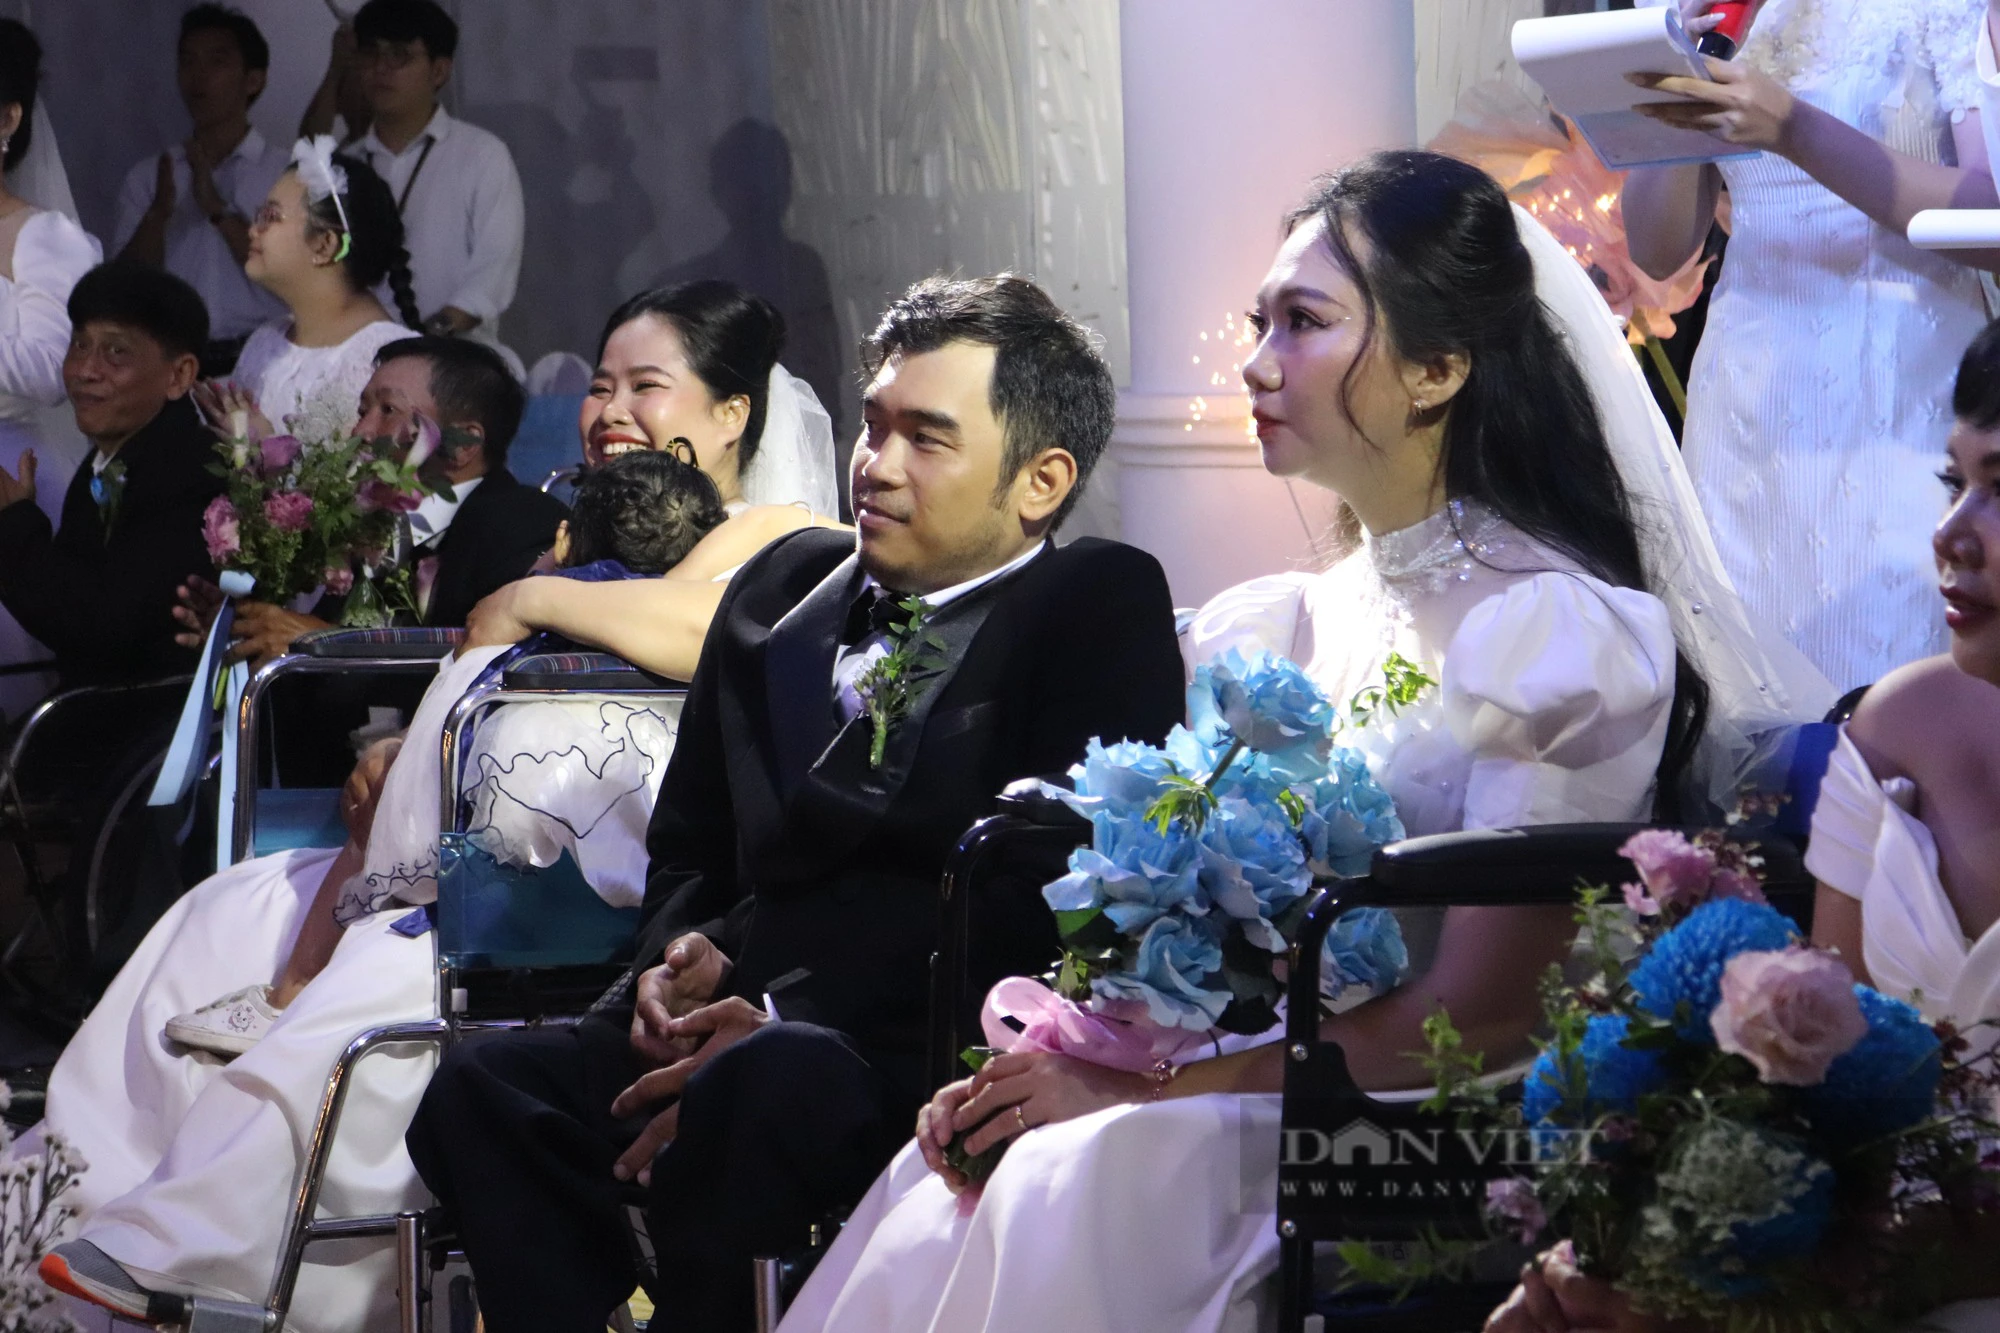 Xúc động chứng kiến cảnh 5 cặp đôi khuyết tật được tổ chức lễ cưới tại TP.HCM - Ảnh 2.